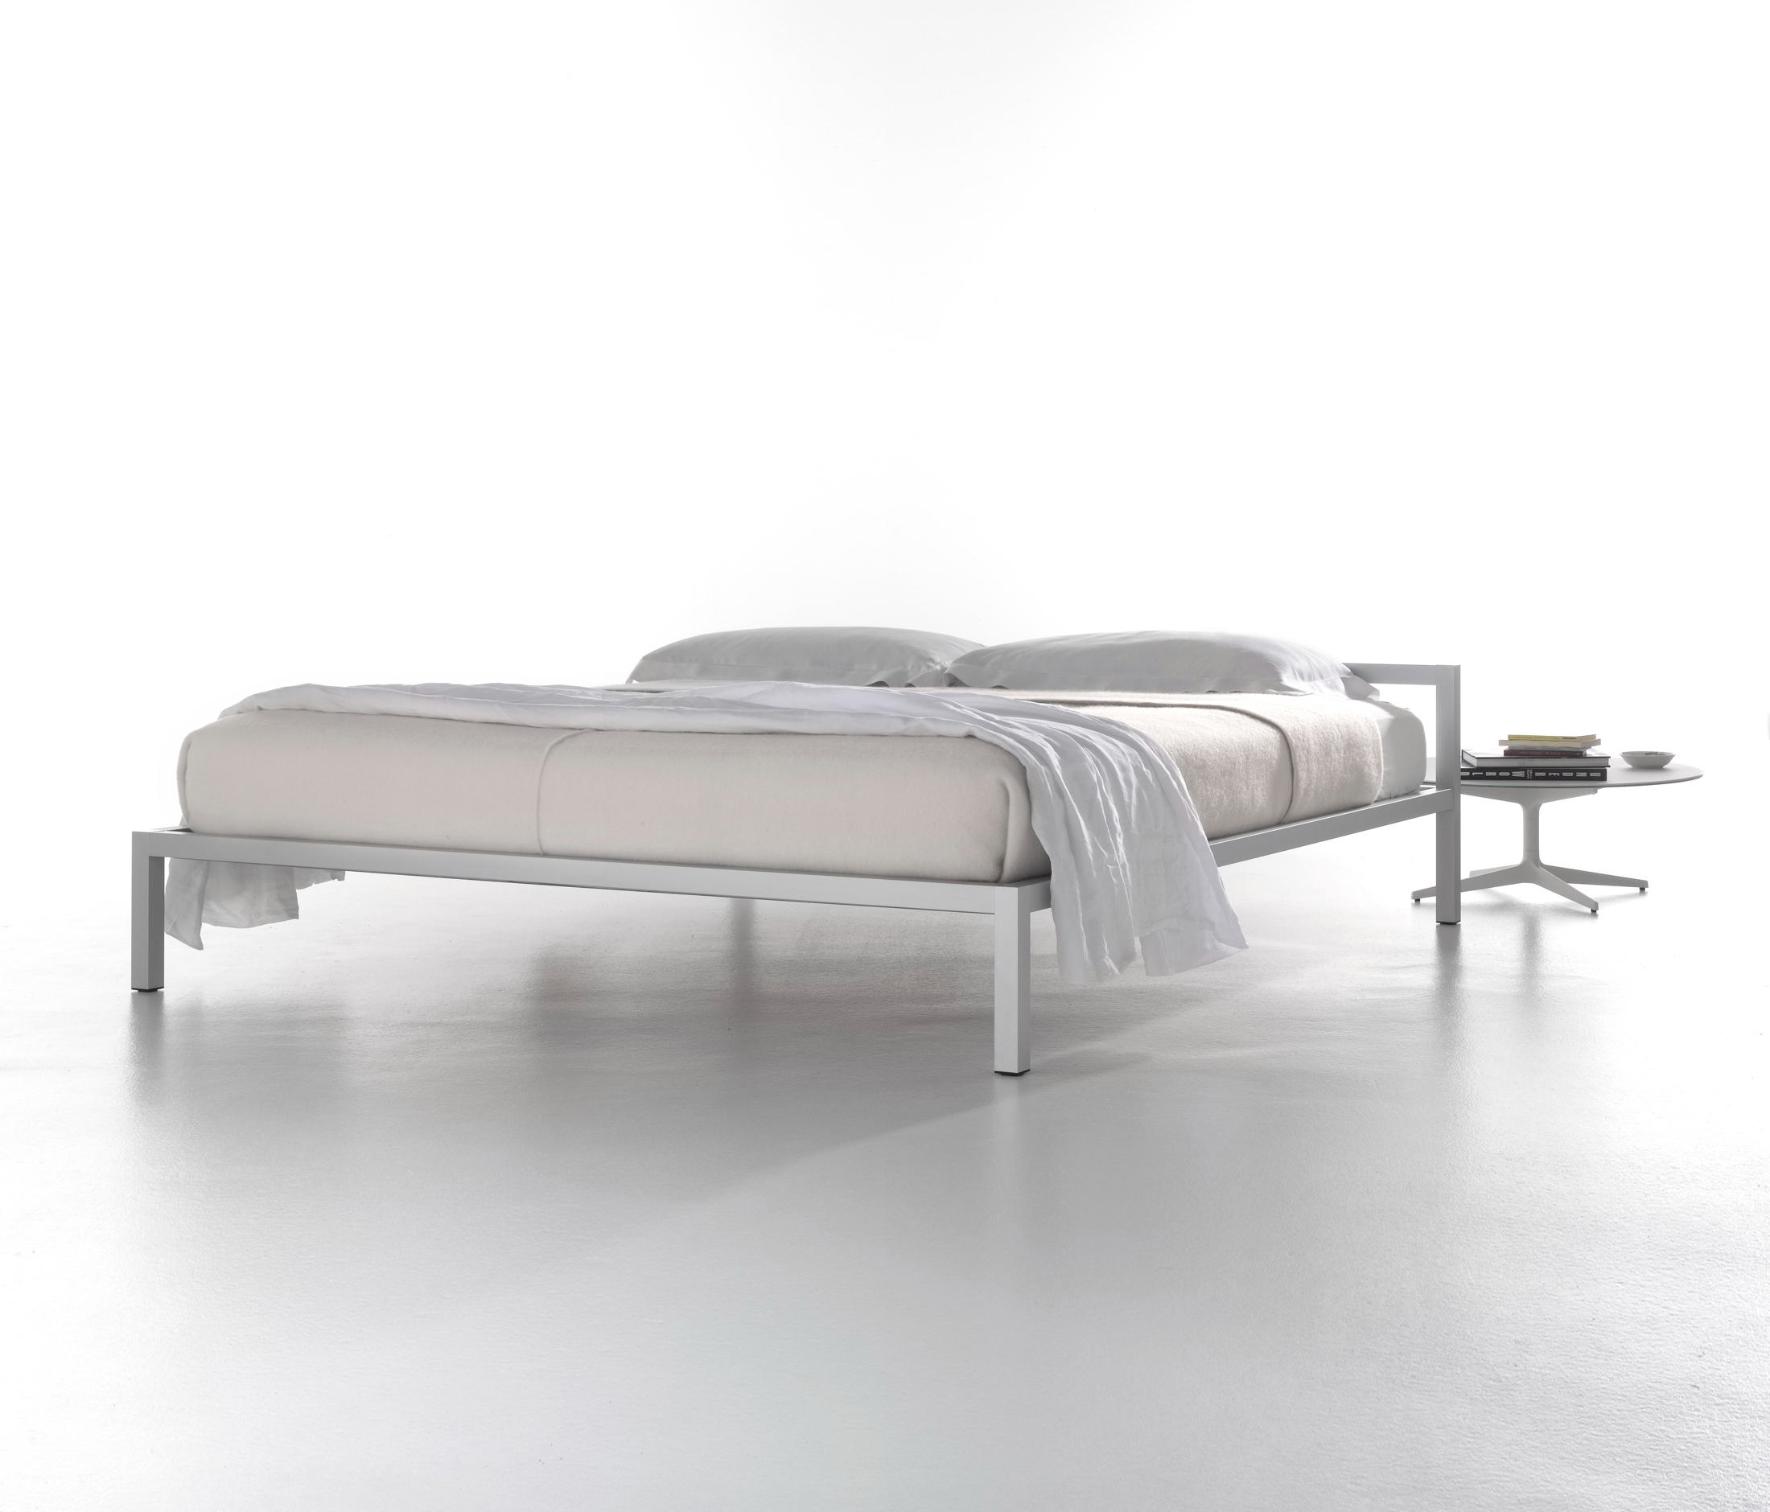 Aluminium Bed with Italian Precision ☞ Structure: Natural Anodized Aluminium X073 ☞ Dimensions: 190 x 210 cm